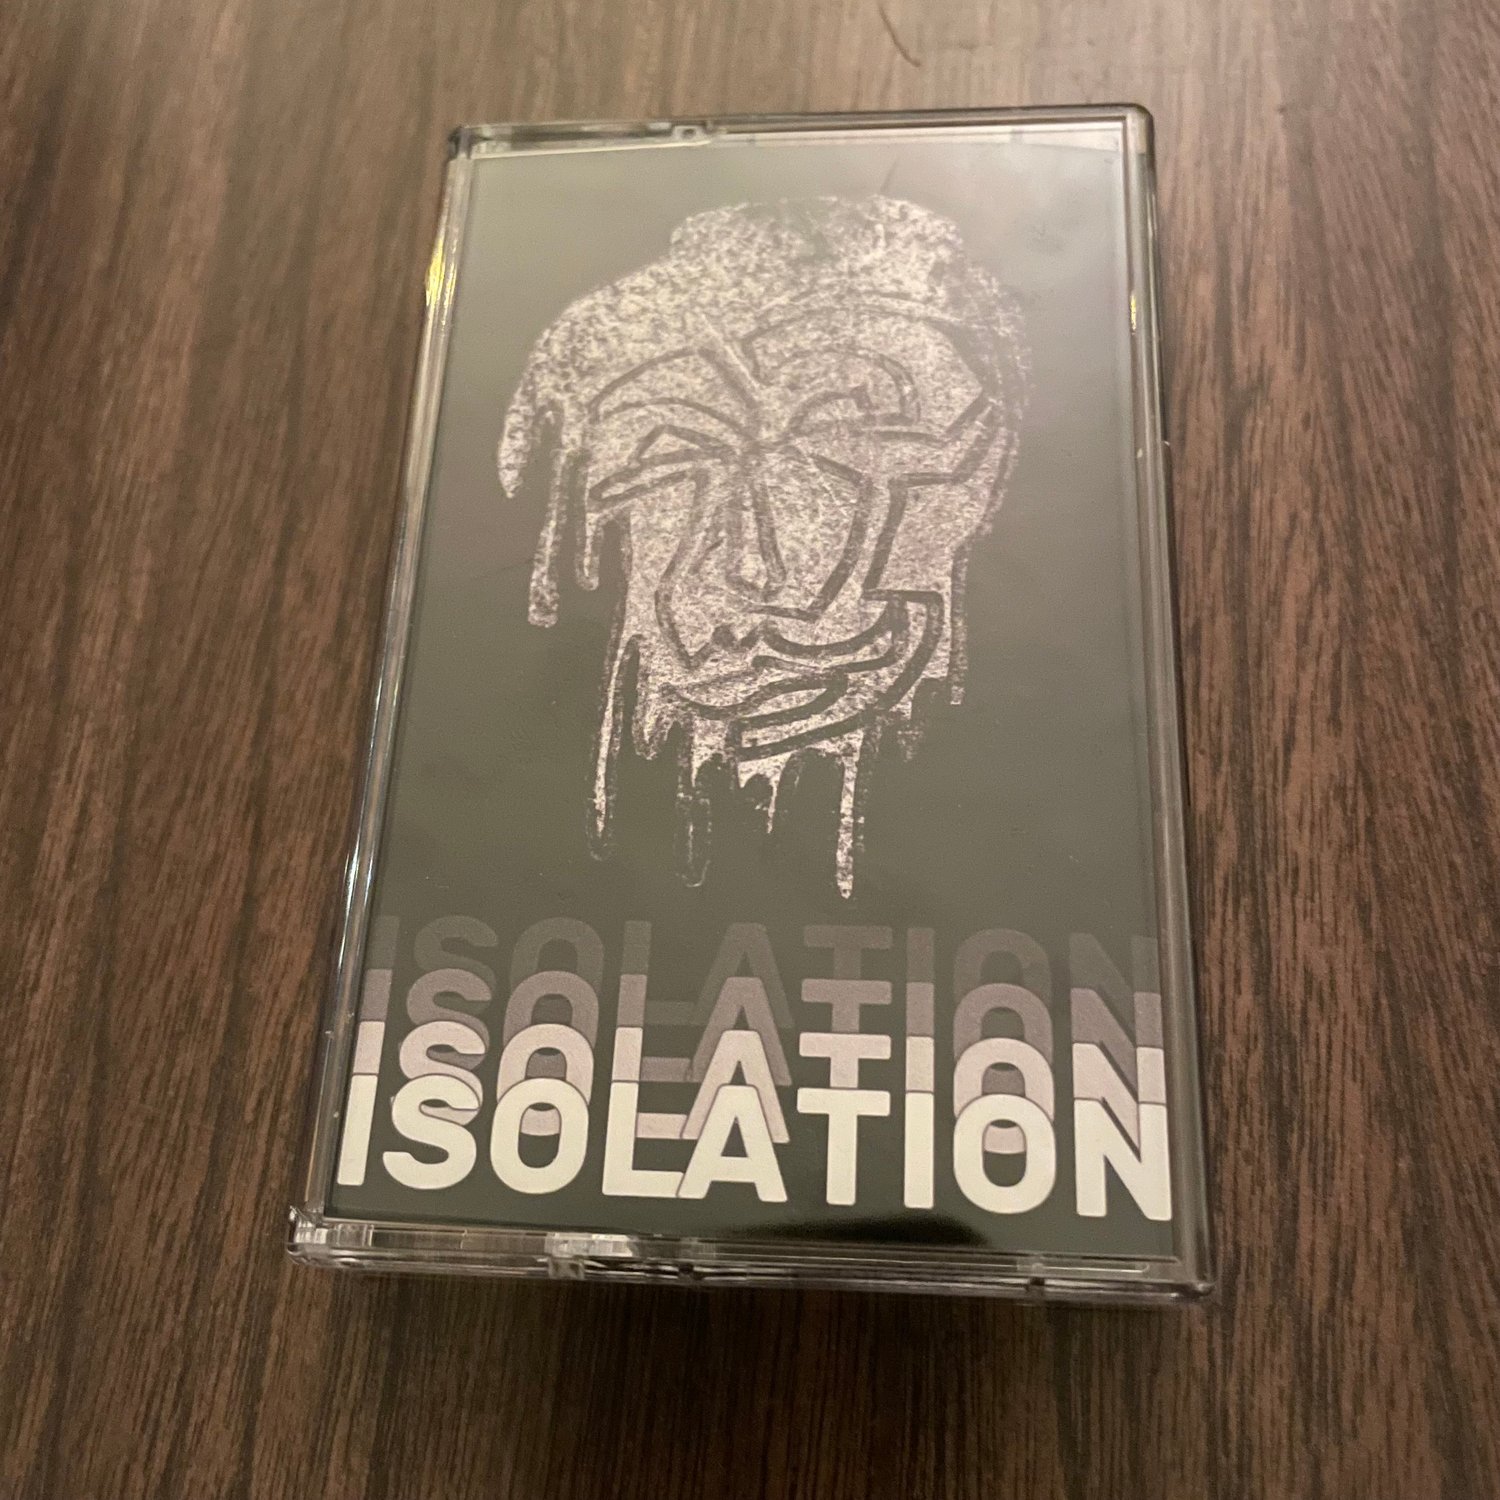 V/a - Isolation by Tolkewitz (cs)